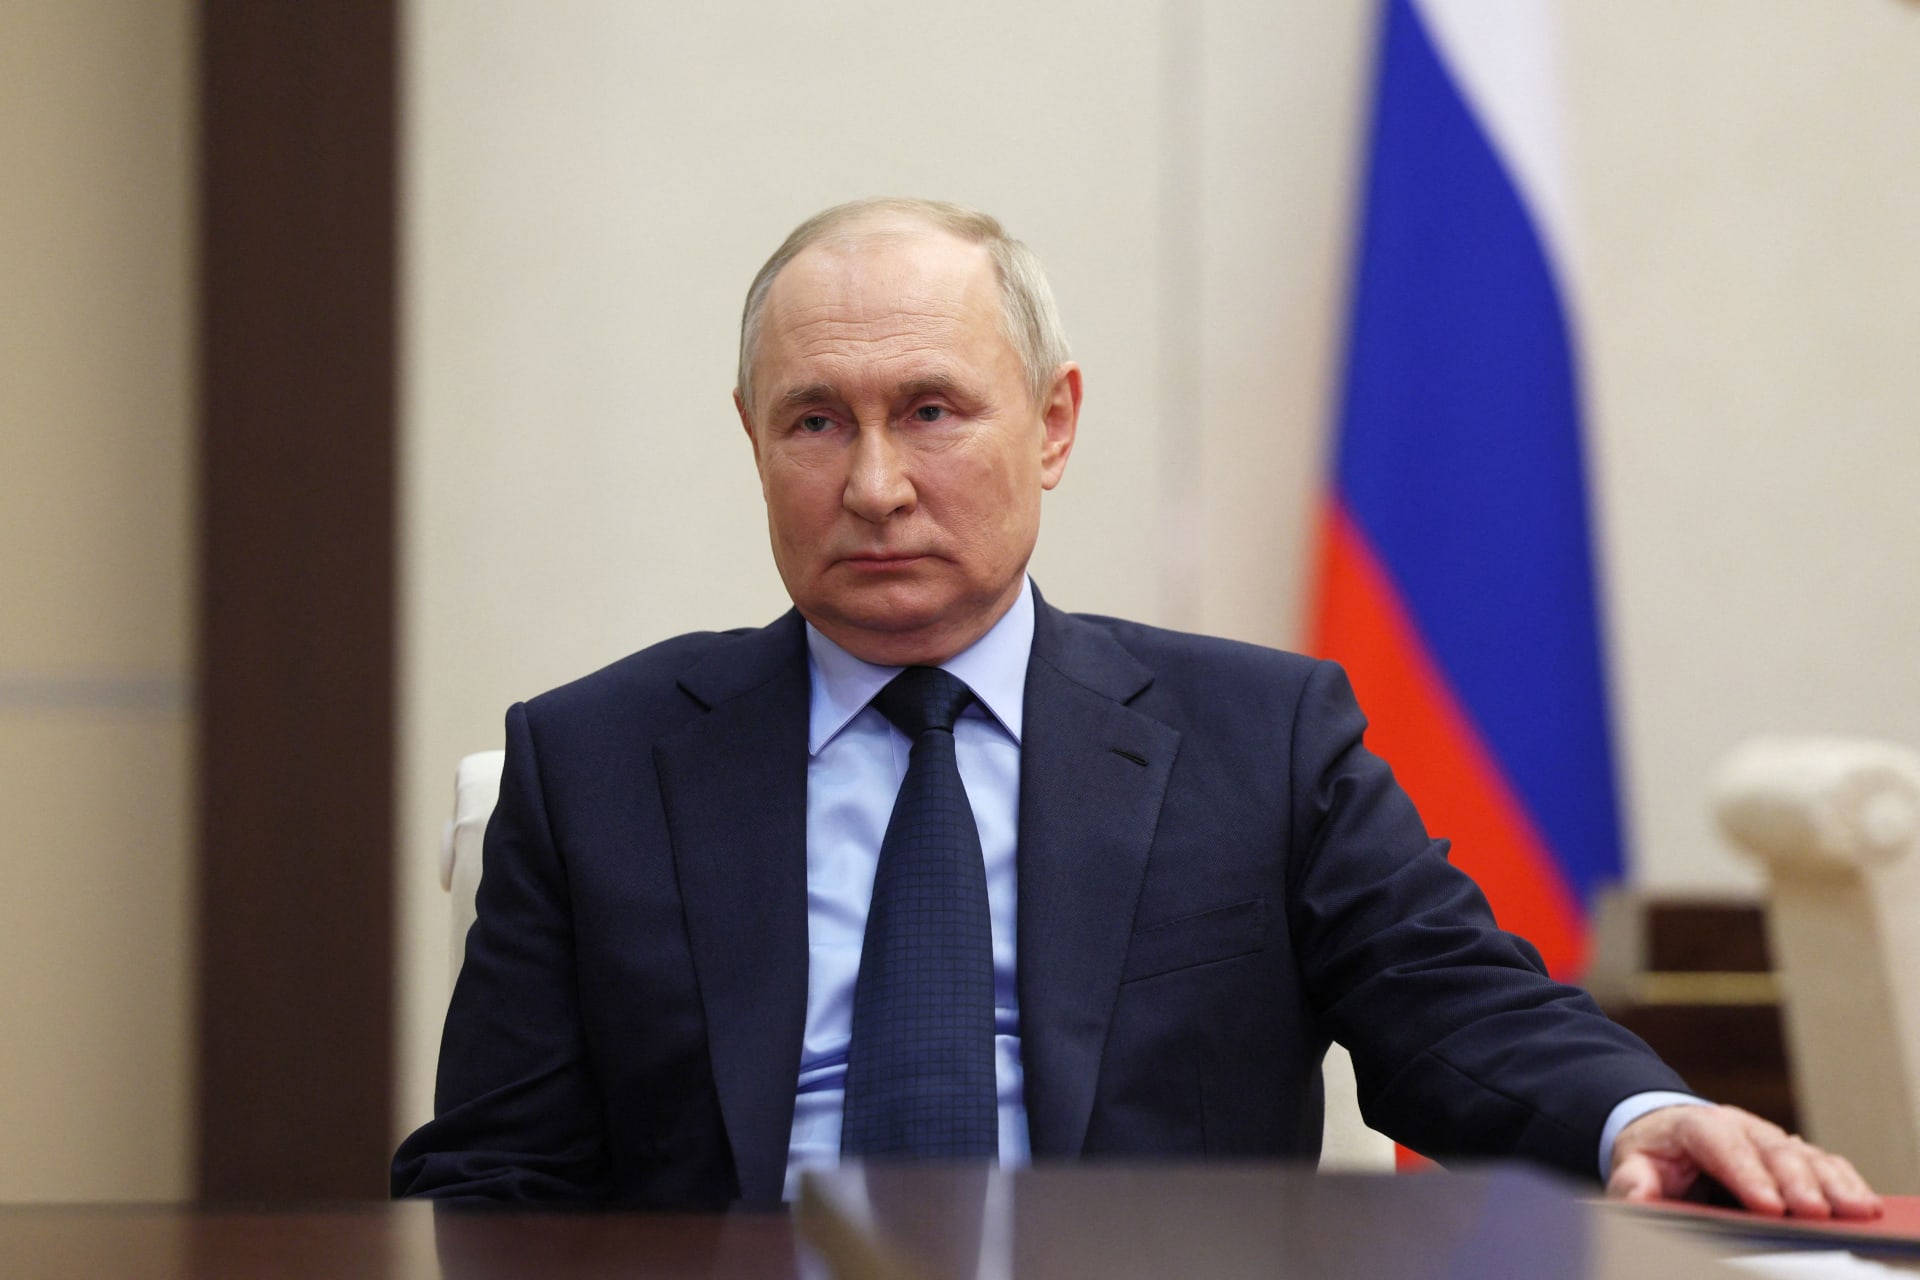 الكرملين: بوتين لم يعلن قراره بعد بشأن خوض انتخابات الرئاسة في 2024